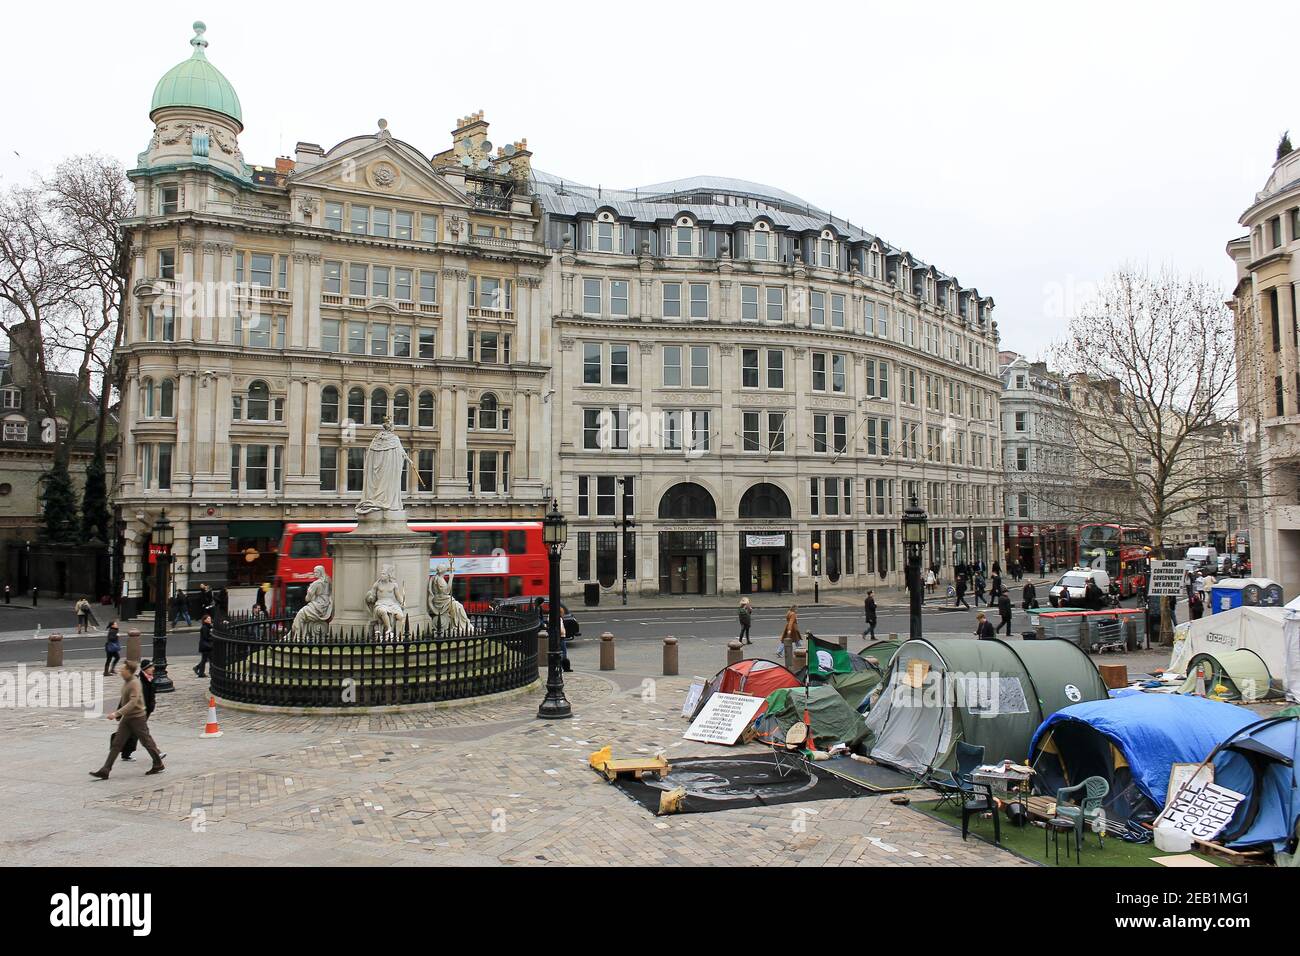 Occuper le camp de mouvement de Londres près de la cathédrale St pauls de Londres Banque D'Images